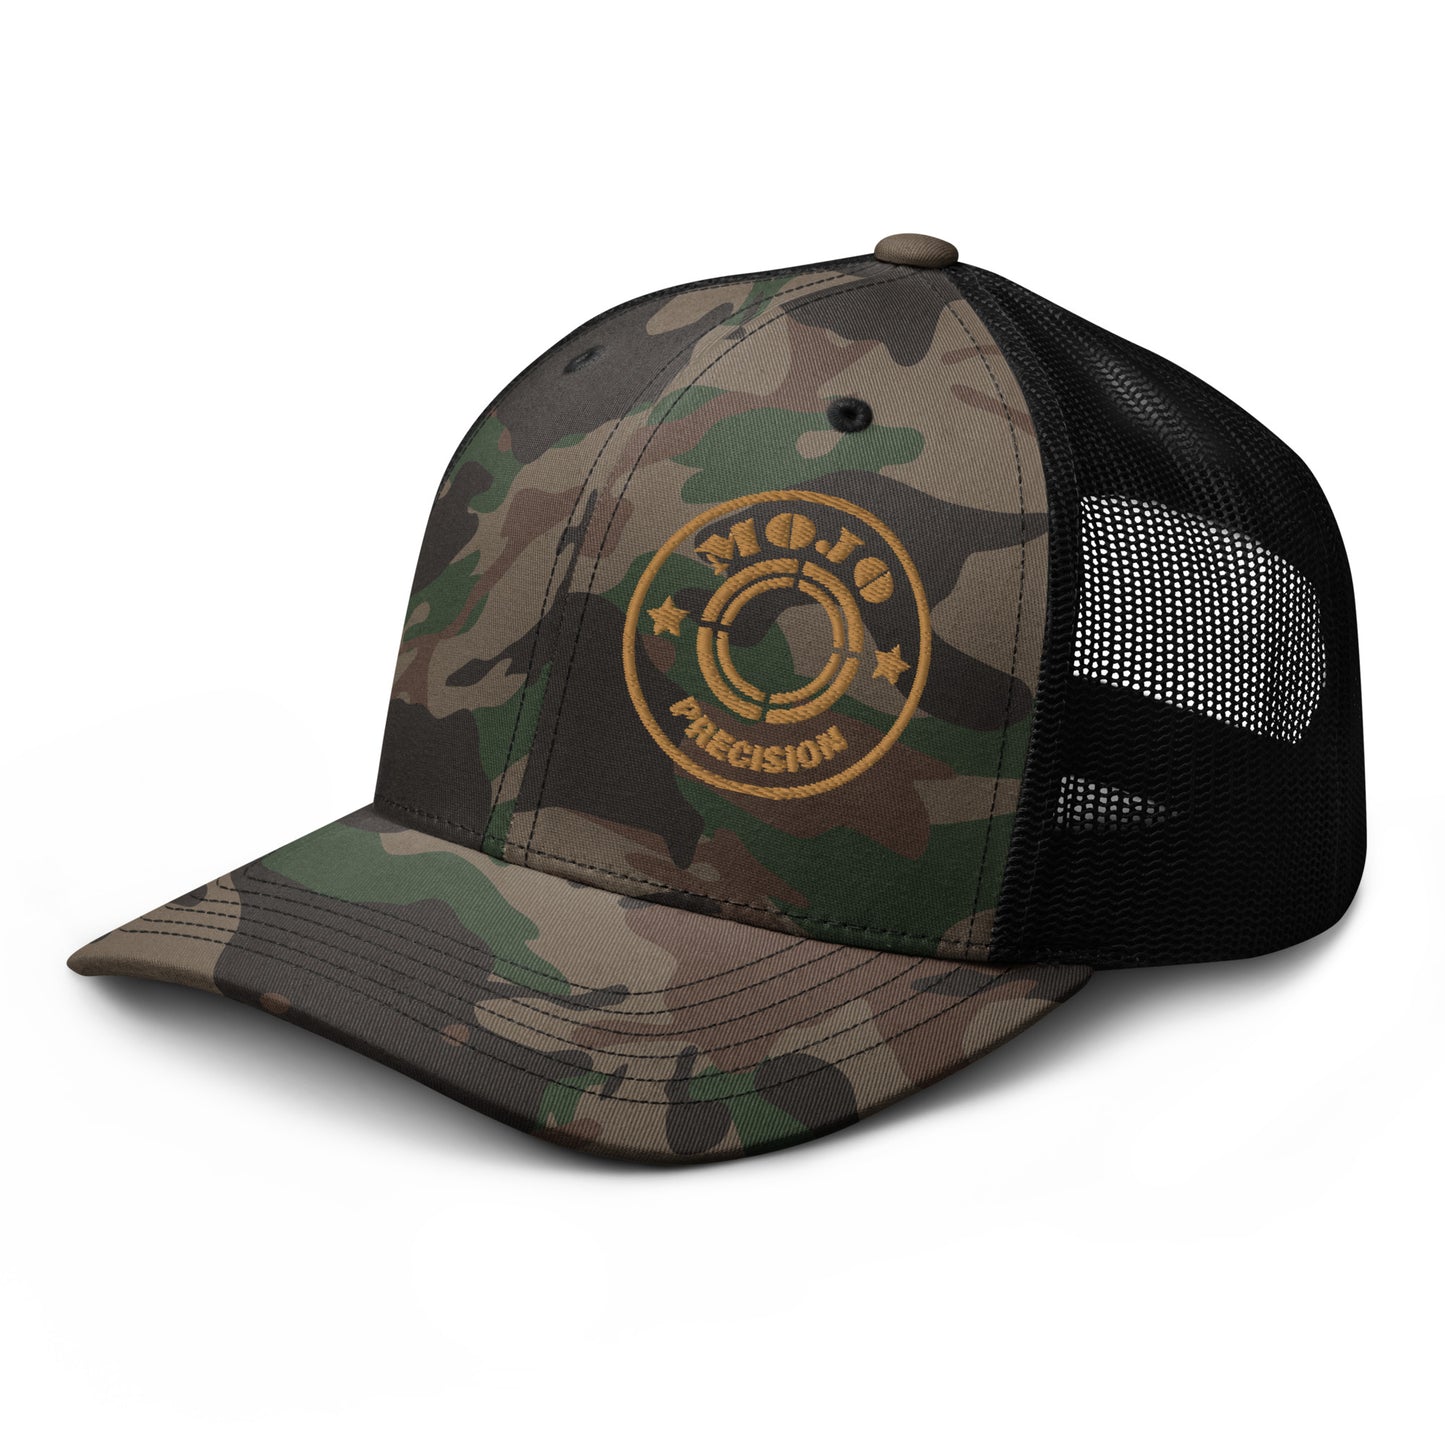 Mojo Side Camouflage trucker hat